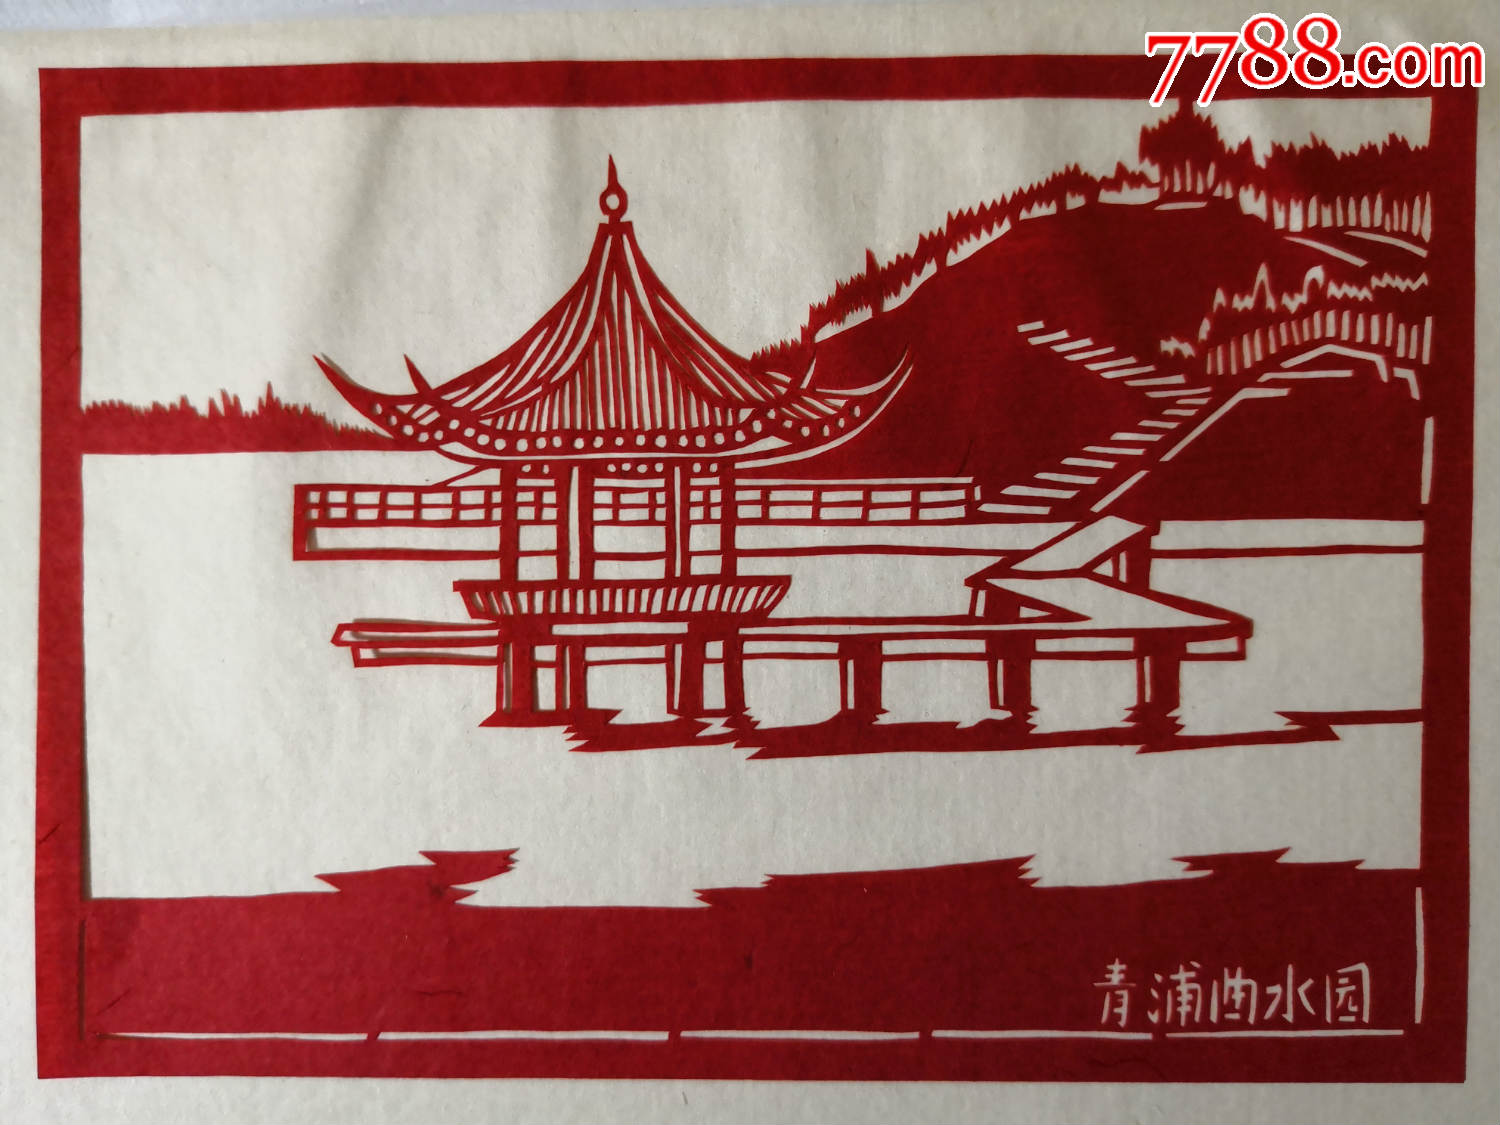 中国刻纸,上海风景,每套6张._剪纸/窗花_常春阁【7788